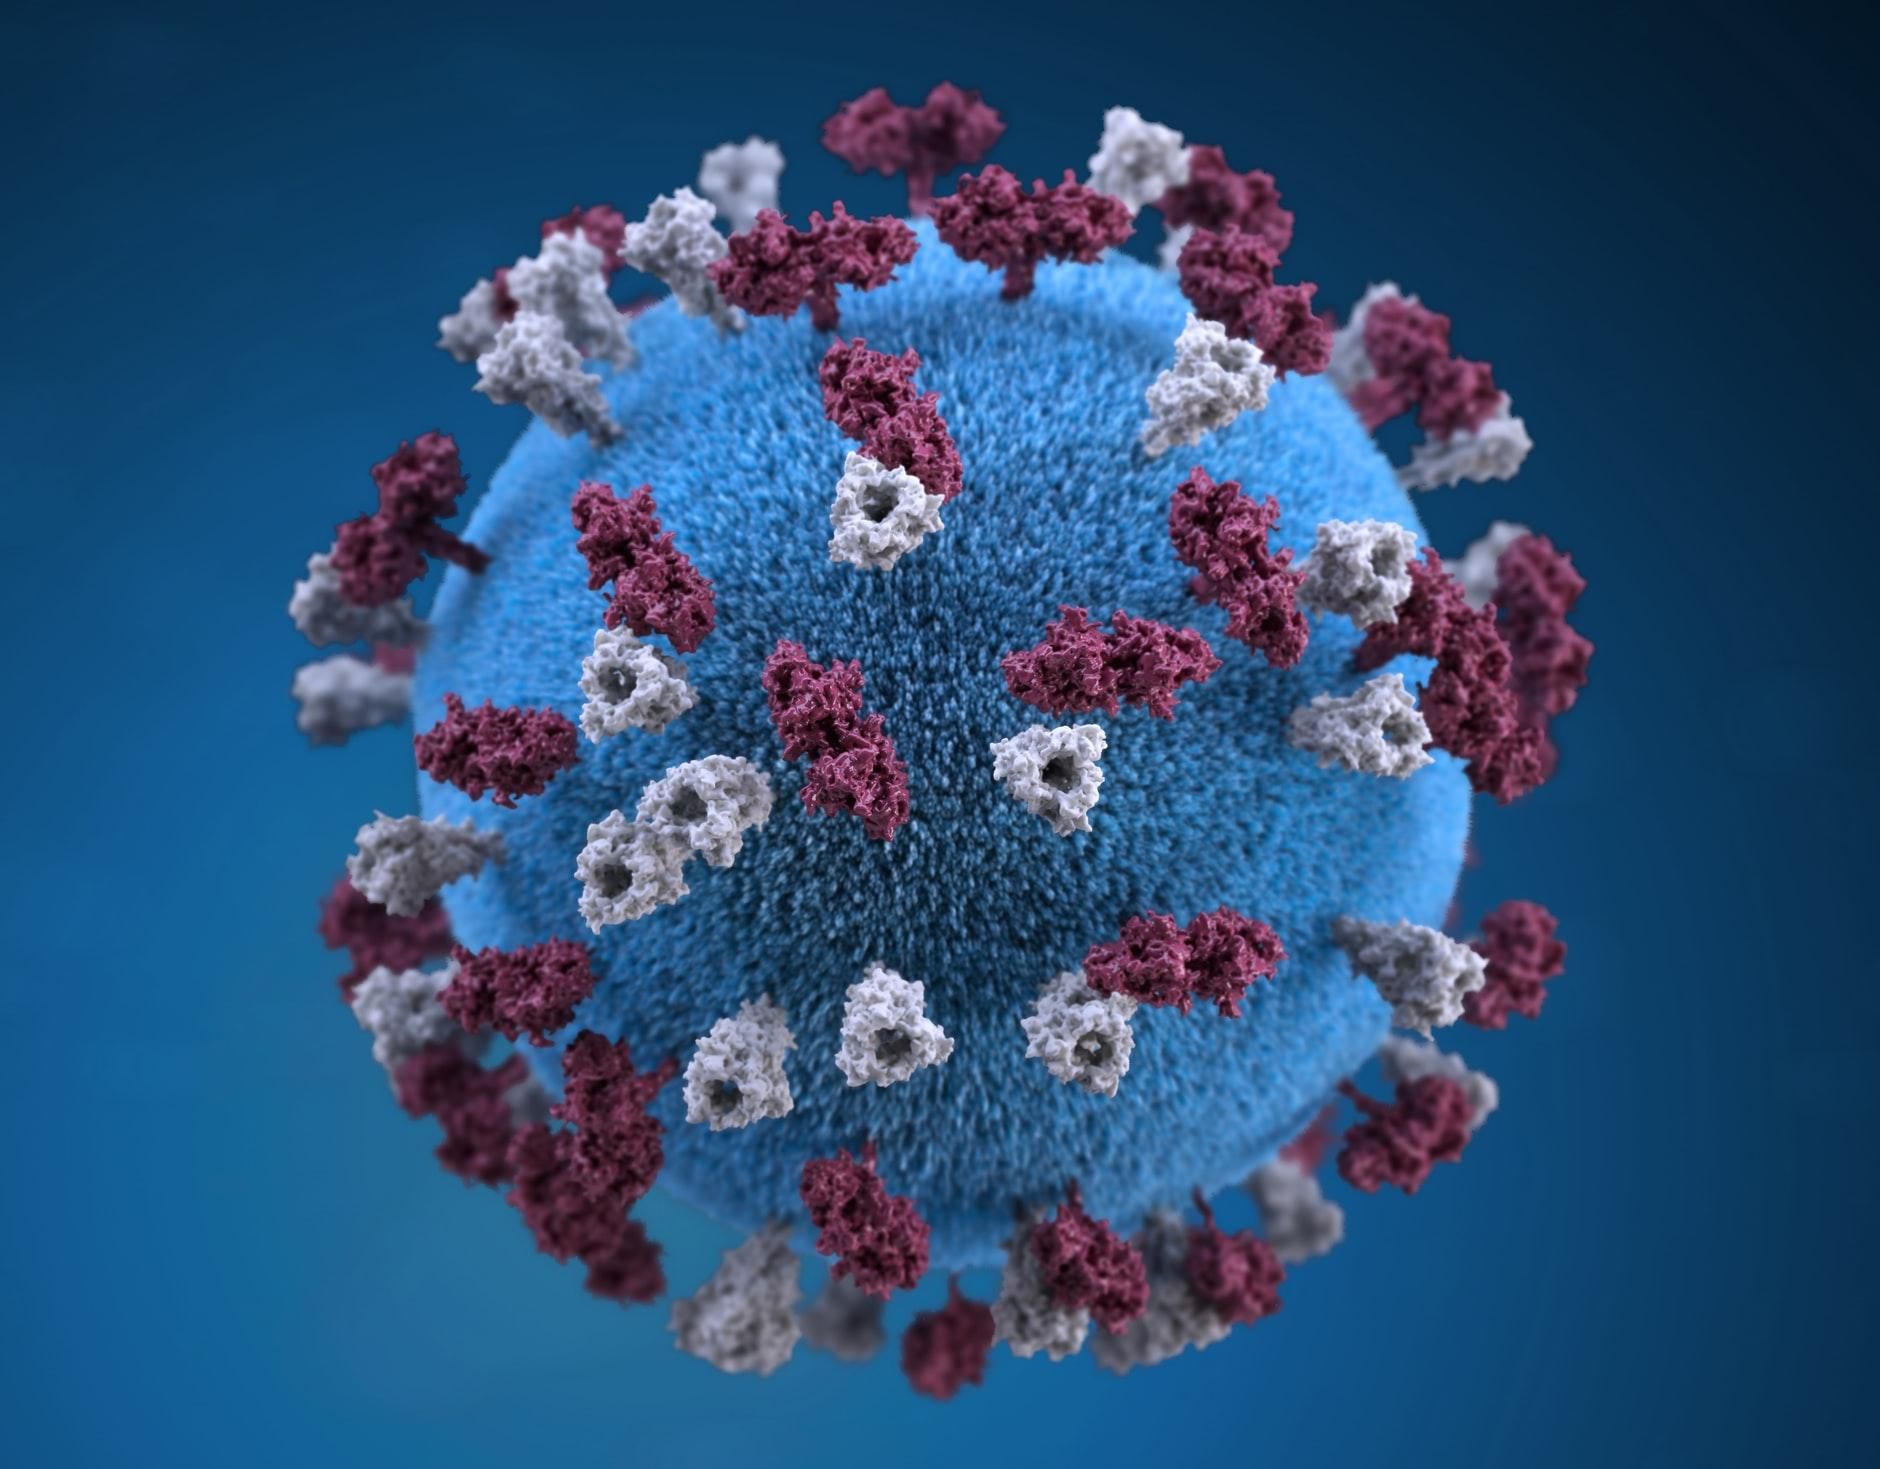 Новый штамм коронавируса в Британии: симптомы, что известно